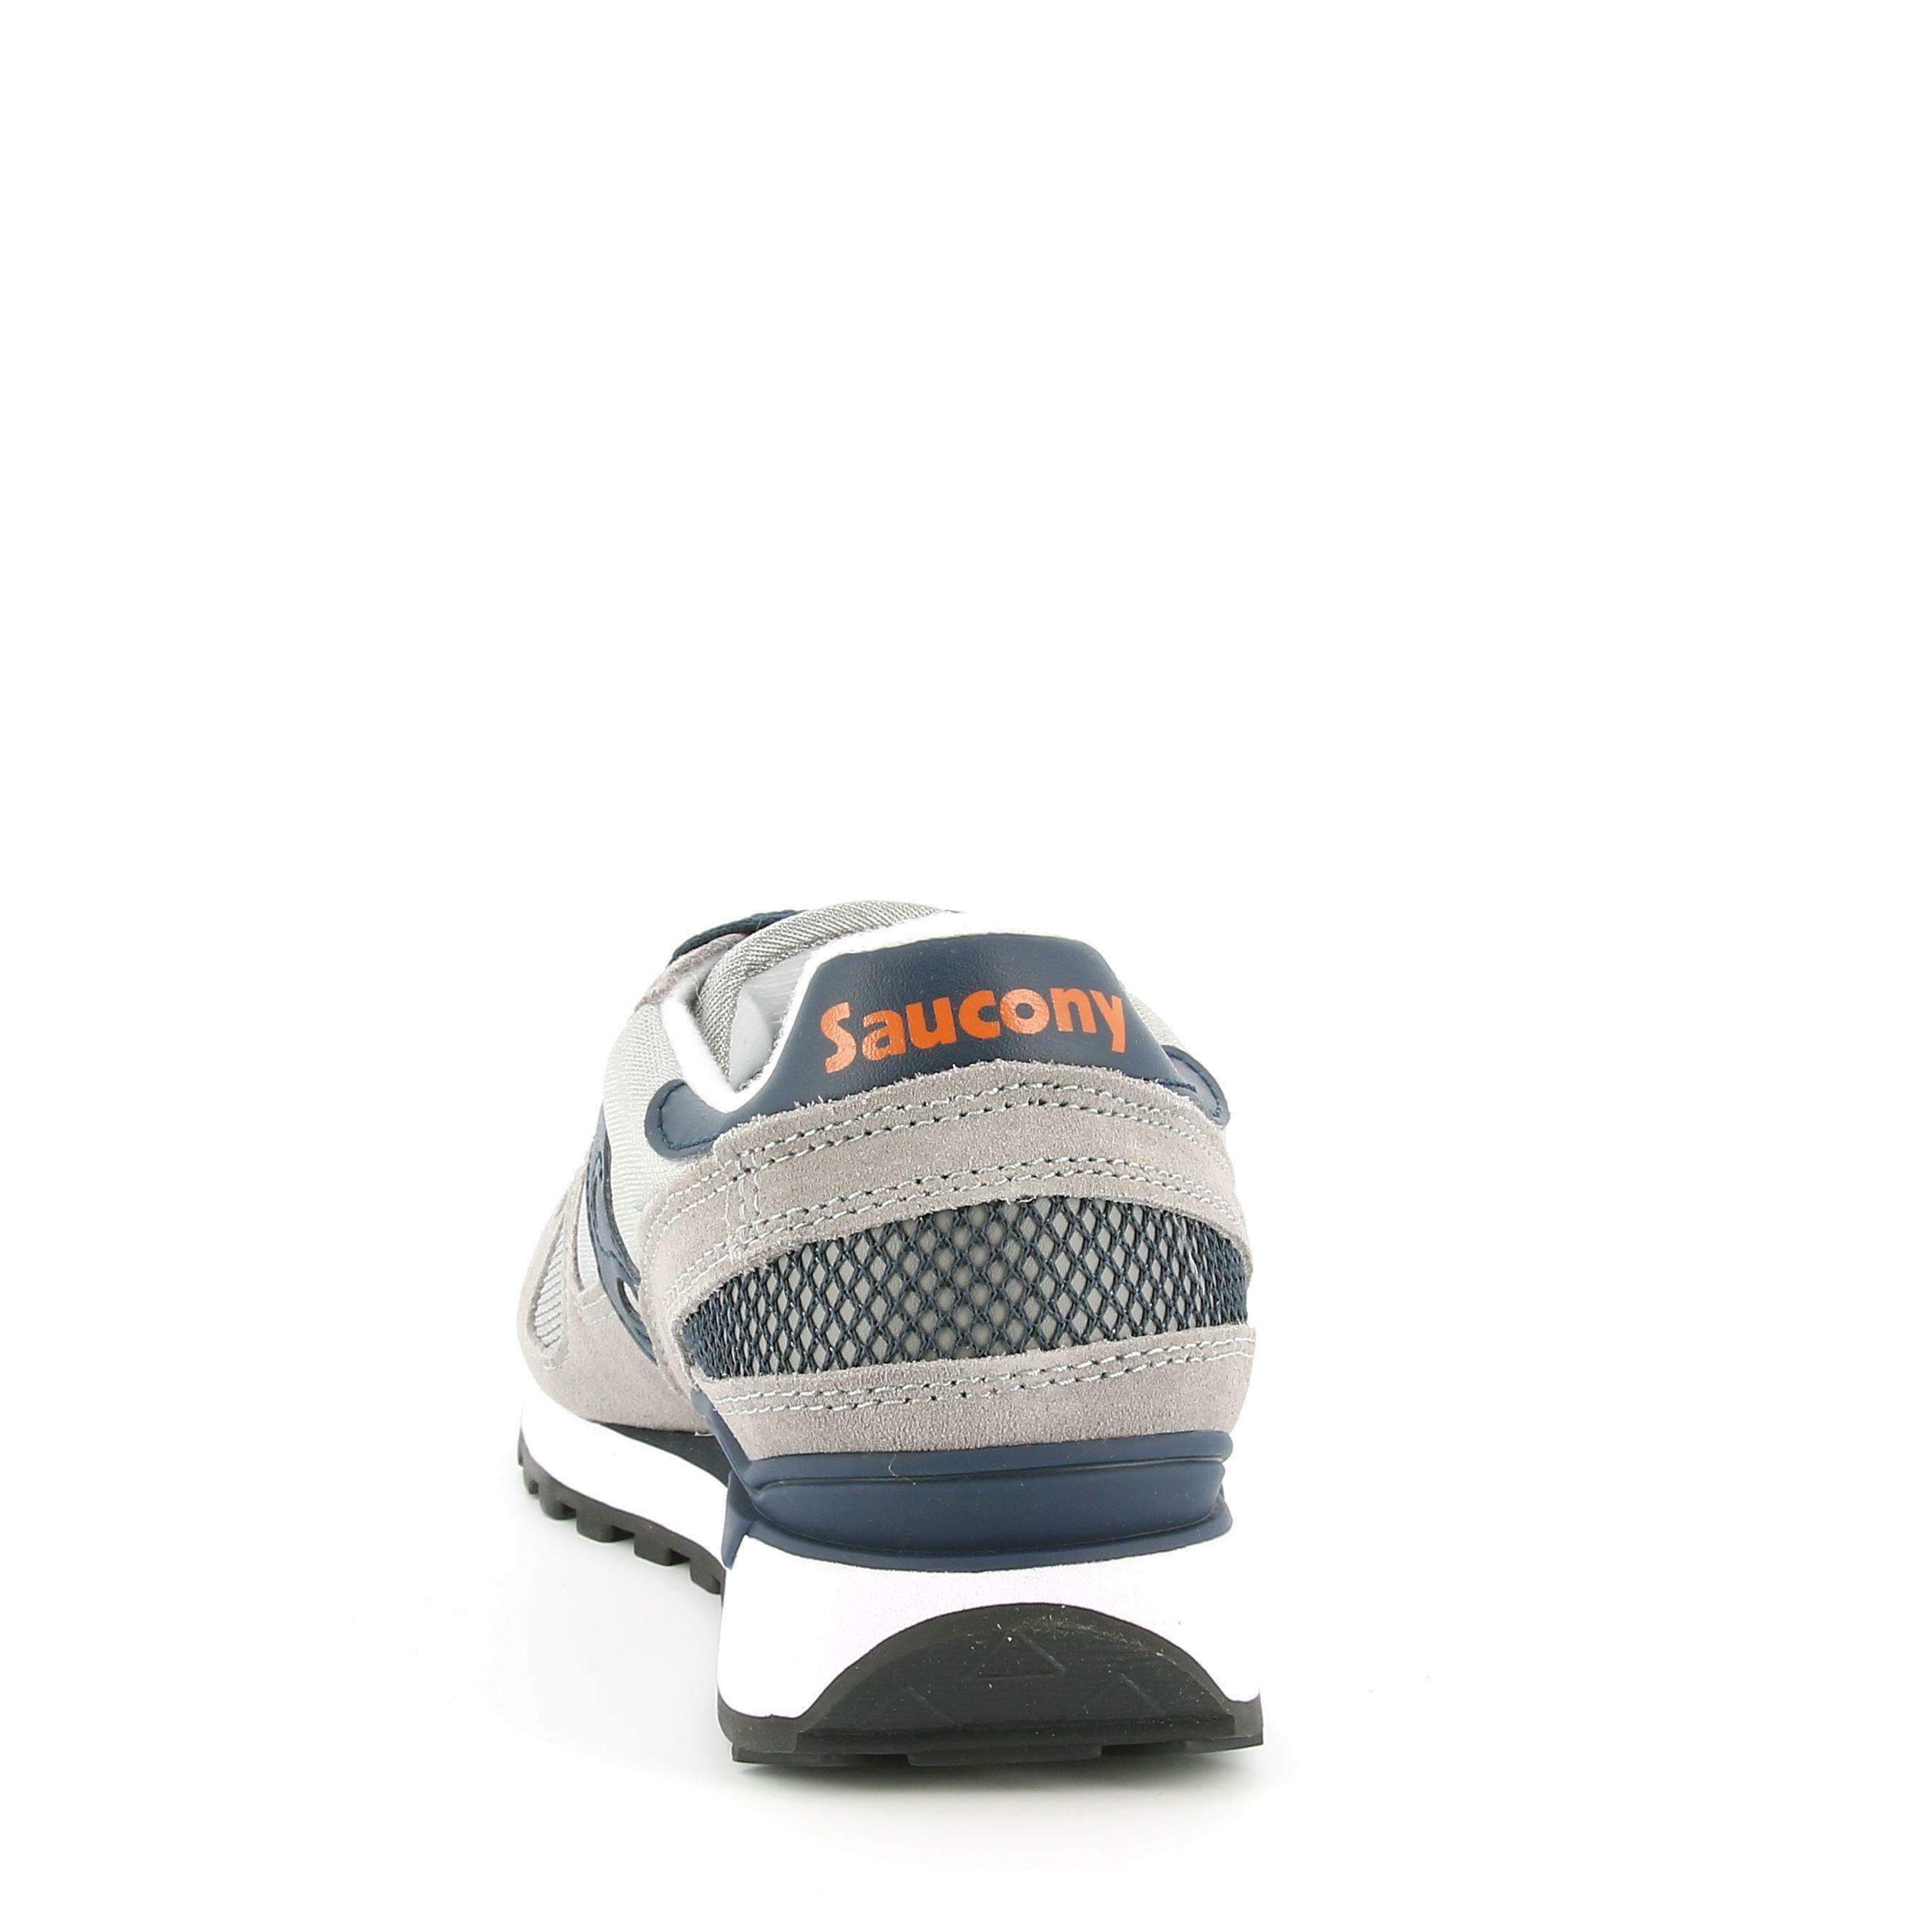 saucony scarpa sportiva saucony shadow s2108-563. da uomo, di colore grigio